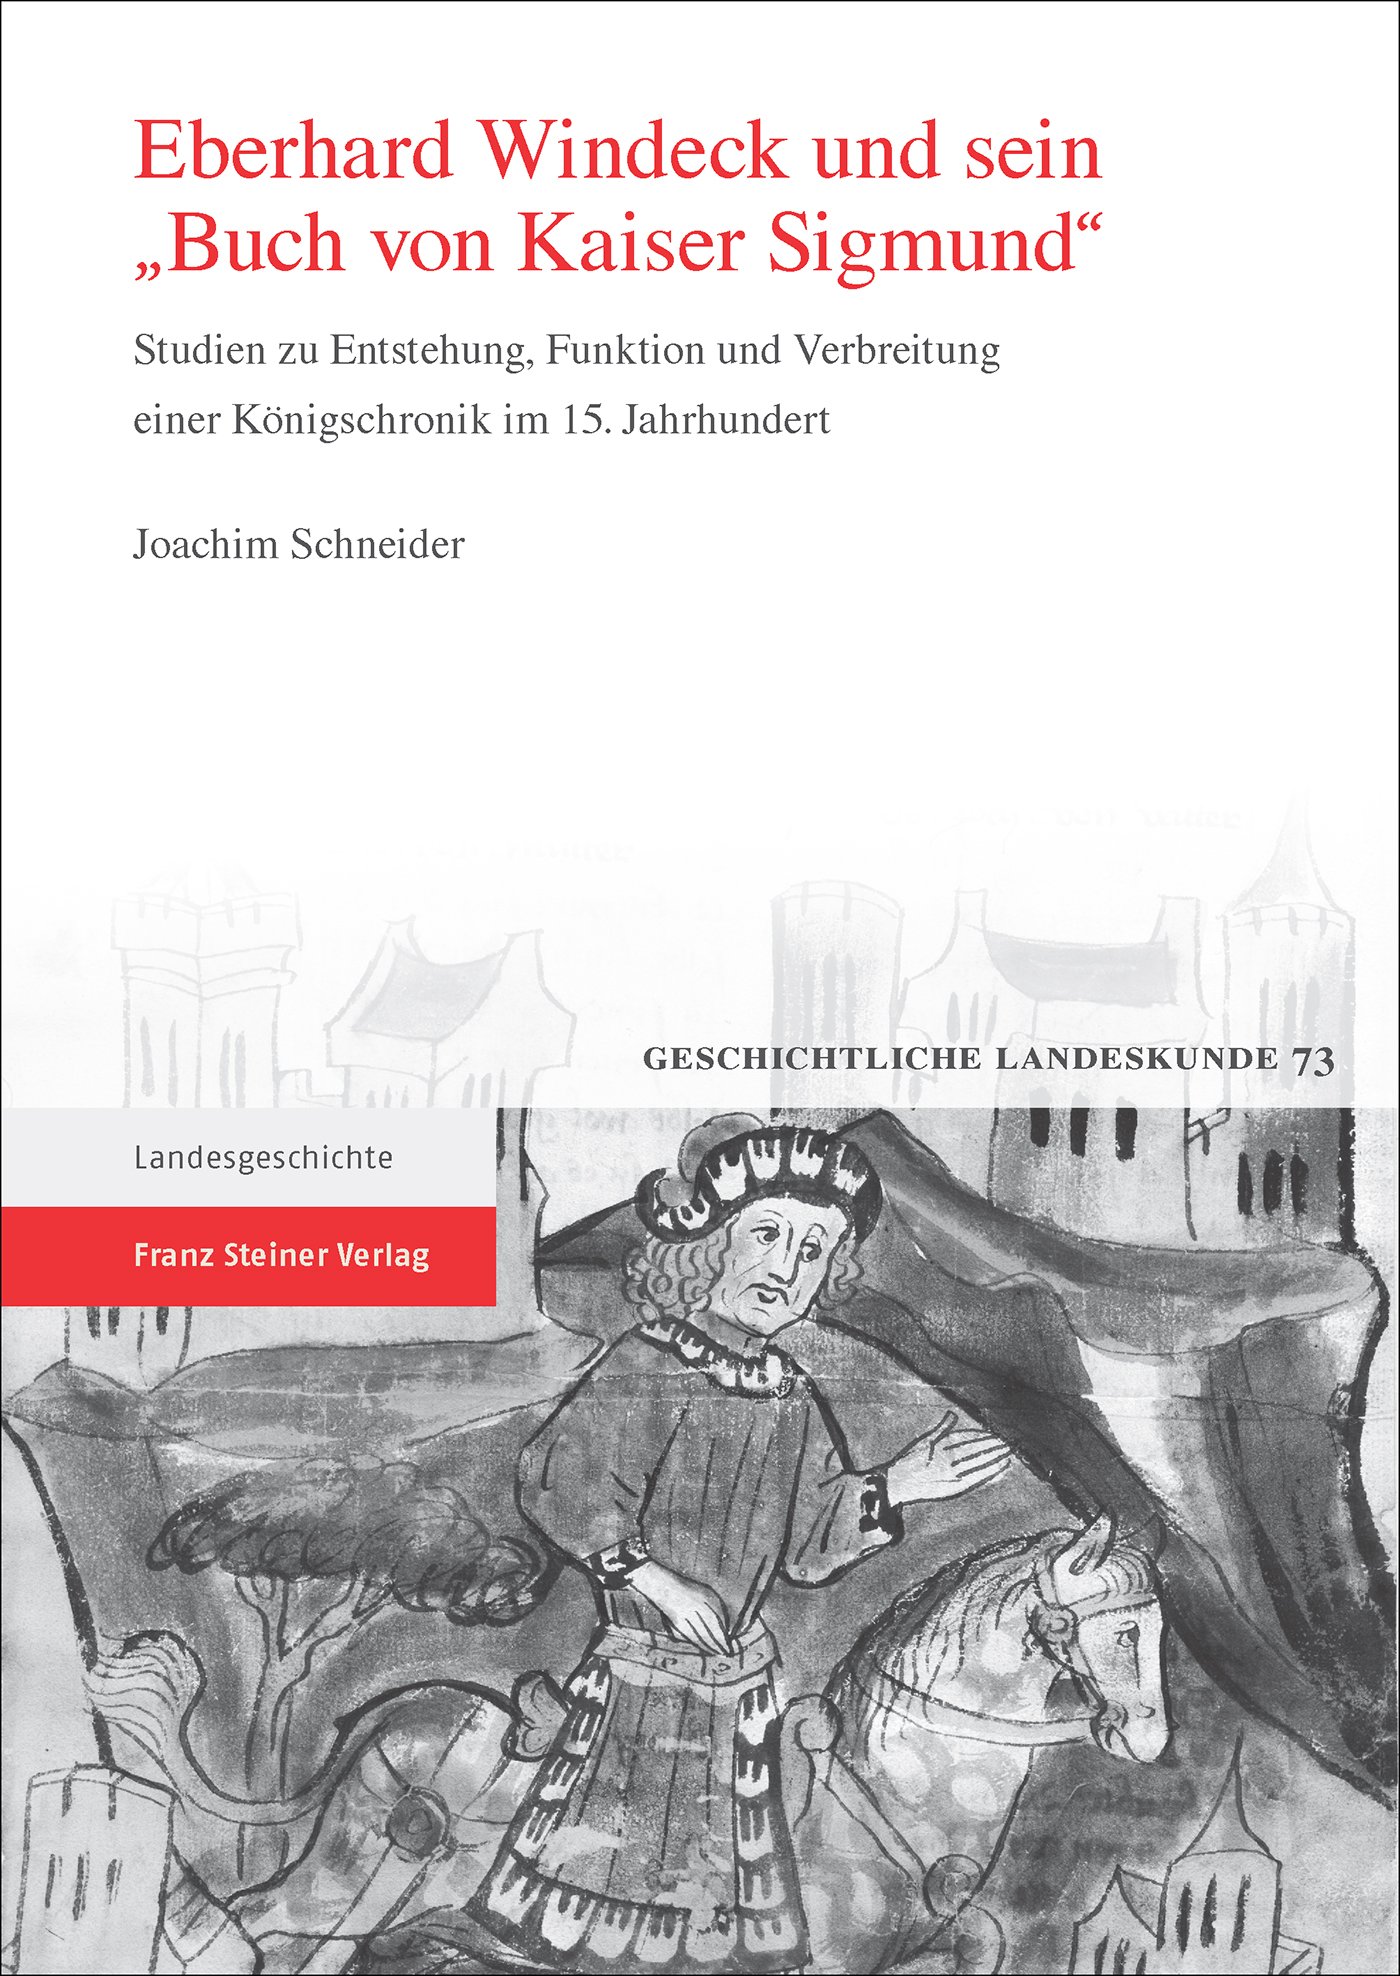 Eberhard Windeck und sein "Buch von Kaiser Sigmund"